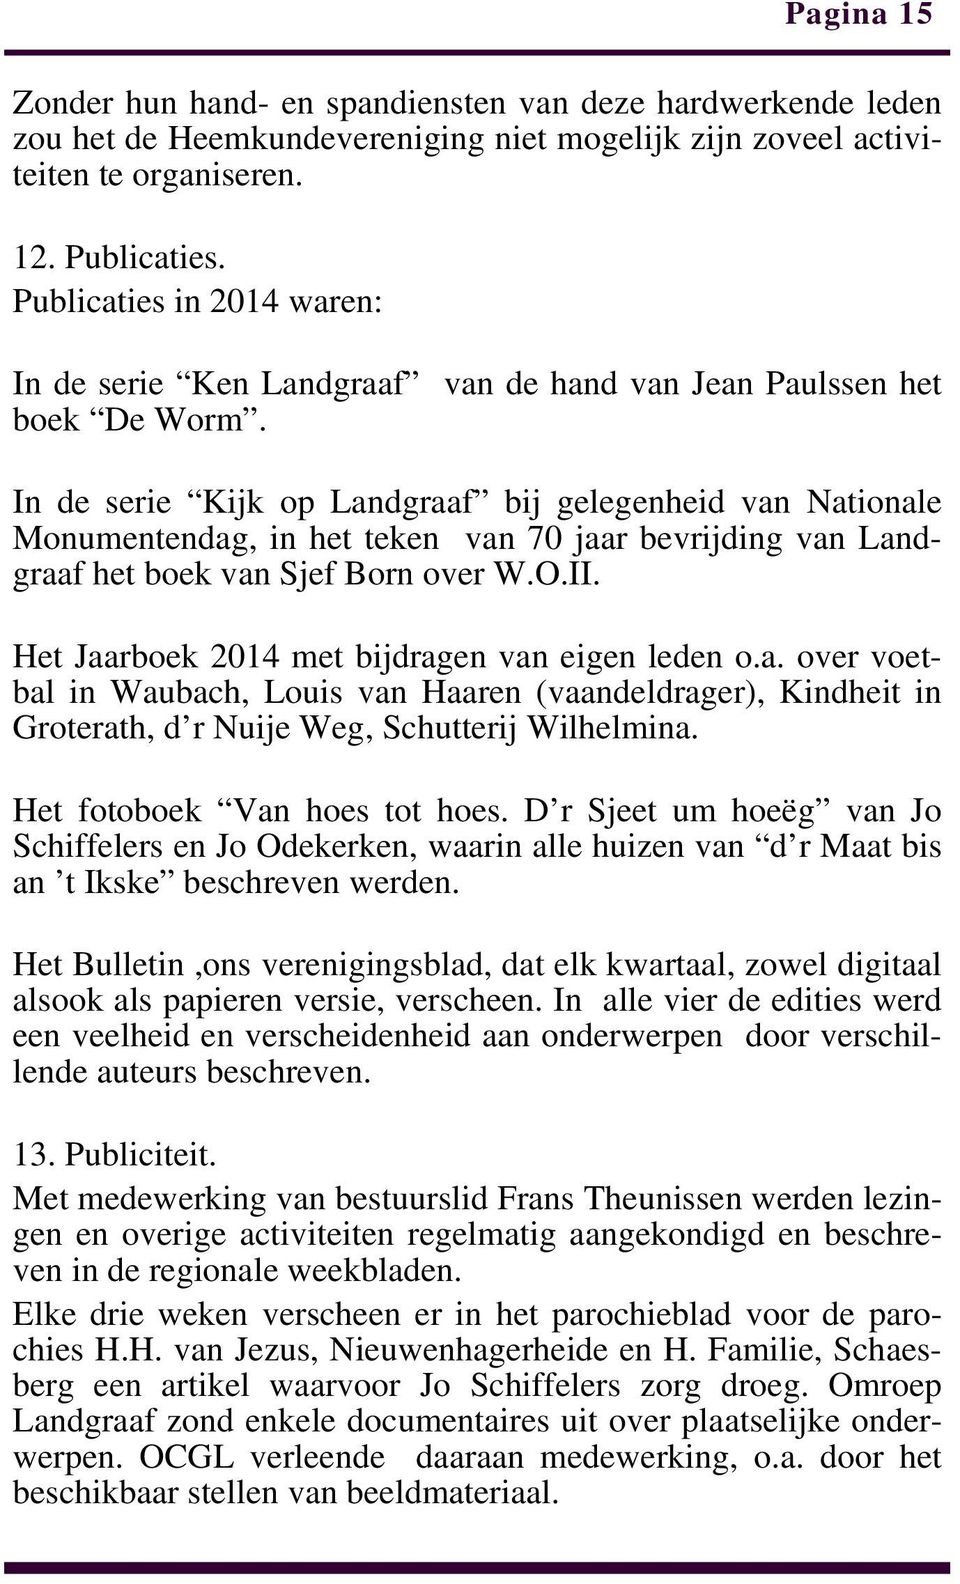 In de serie Kijk op Landgraaf bij gelegenheid van Nationale Monumentendag, in het teken van 70 jaar bevrijding van Landgraaf het boek van Sjef Born over W.O.II.